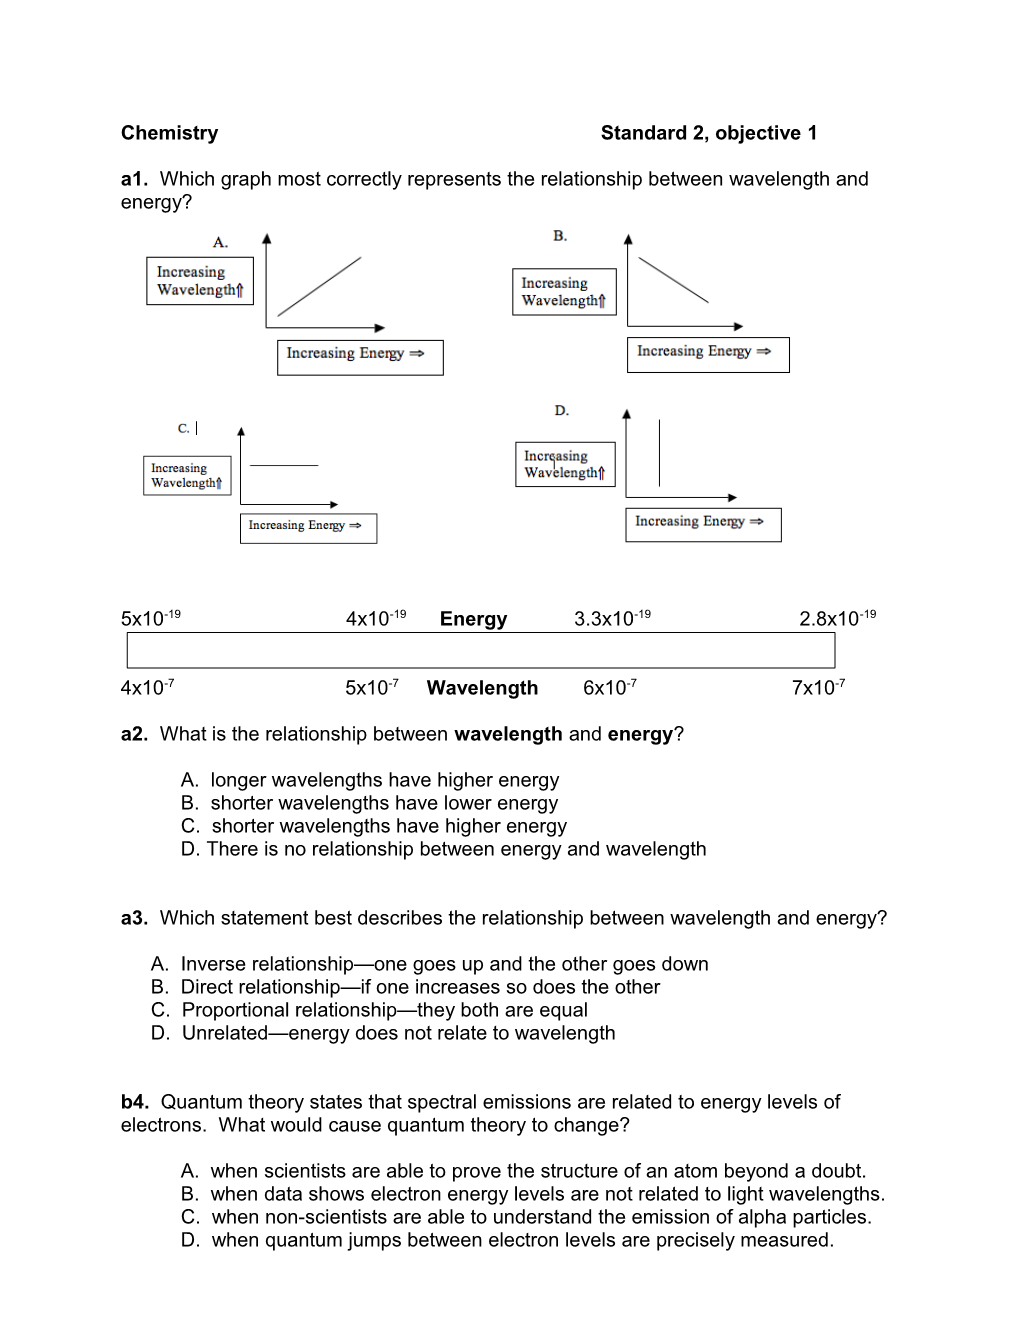 Chemistry Standard 2, Objective 1